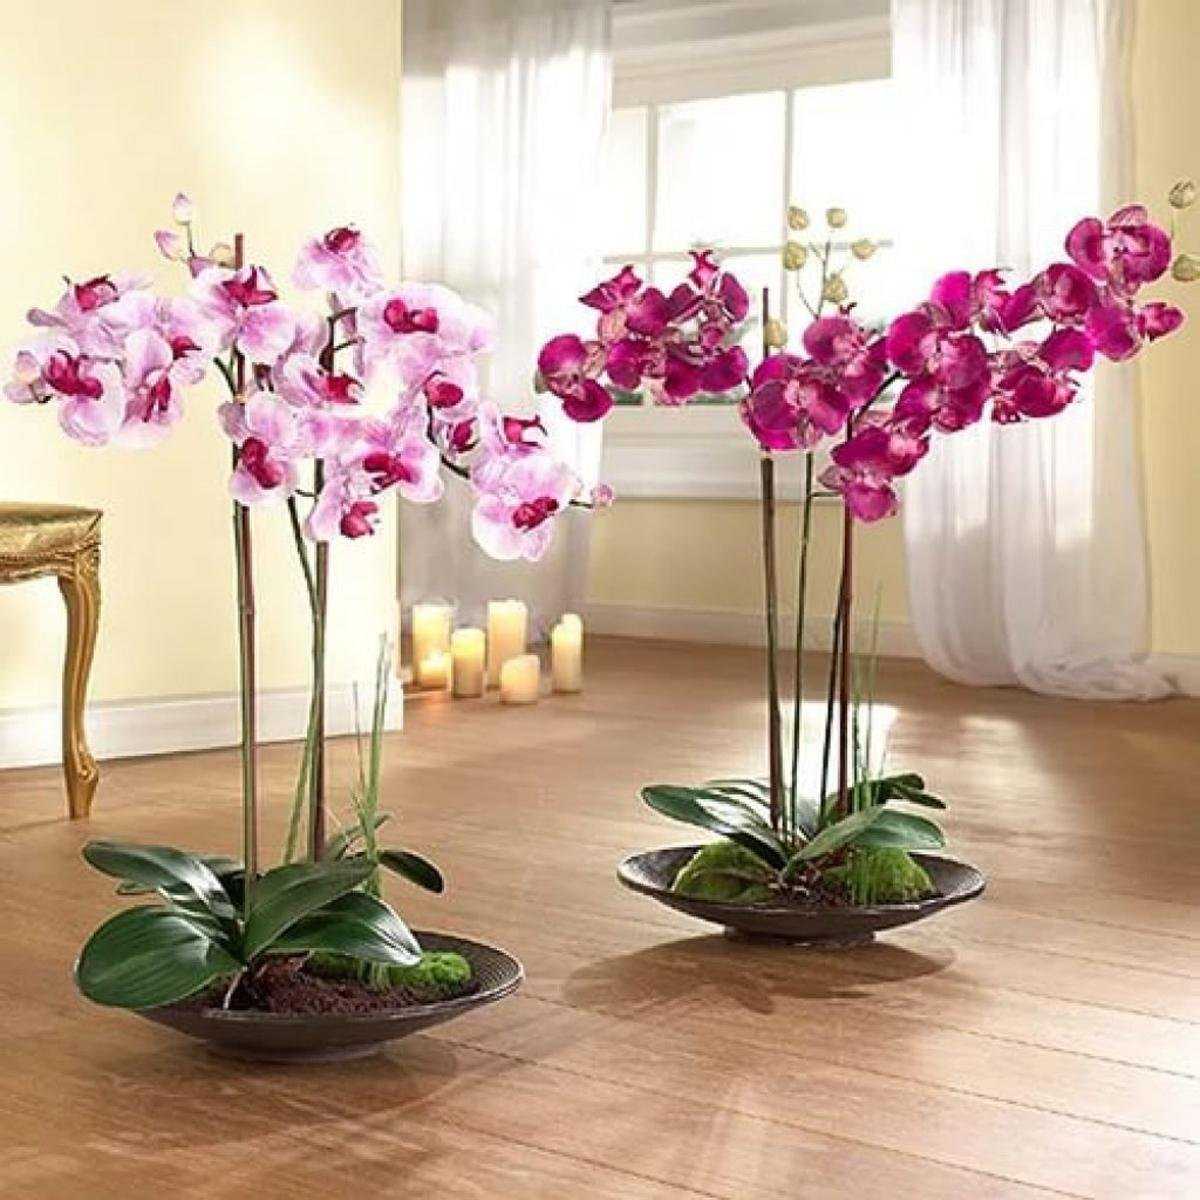 Флорариум с орхидеями своими руками: пошаговая инструкция с фото, как его сделать из подручных материалов